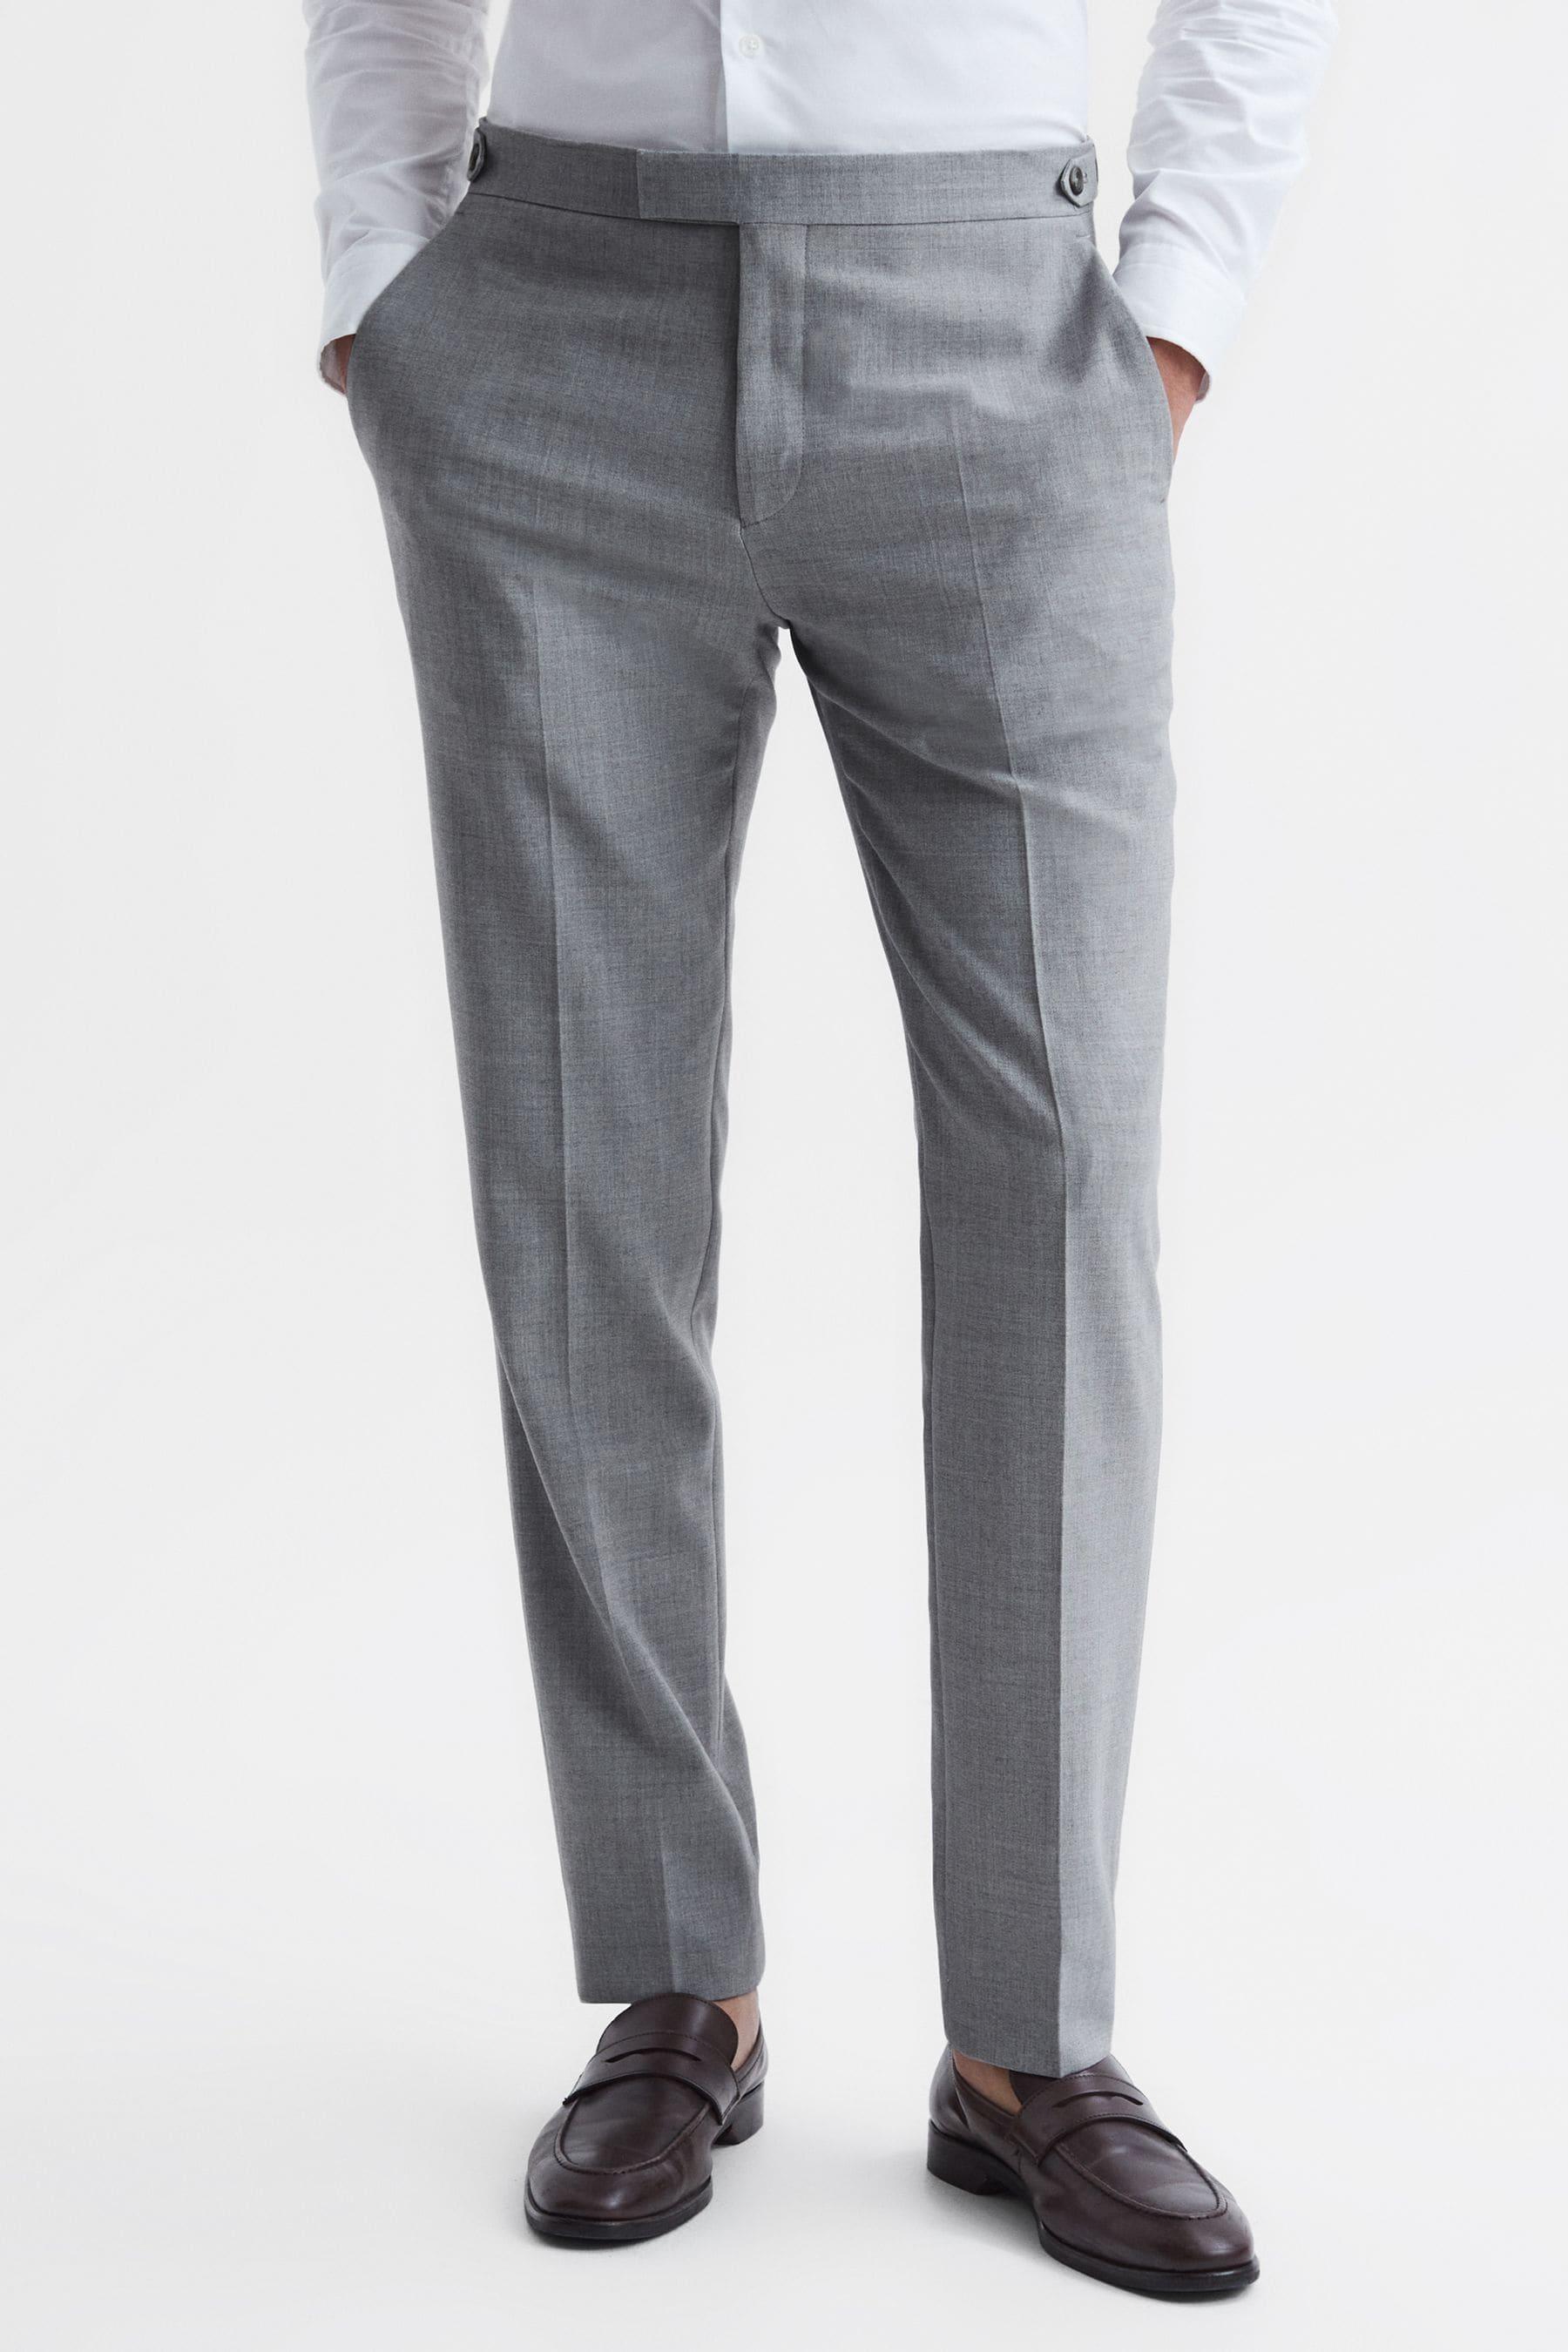 Reiss Arrow - Soft Grey Arrow Slim Fit Wool Blend Trousers, 28 in 